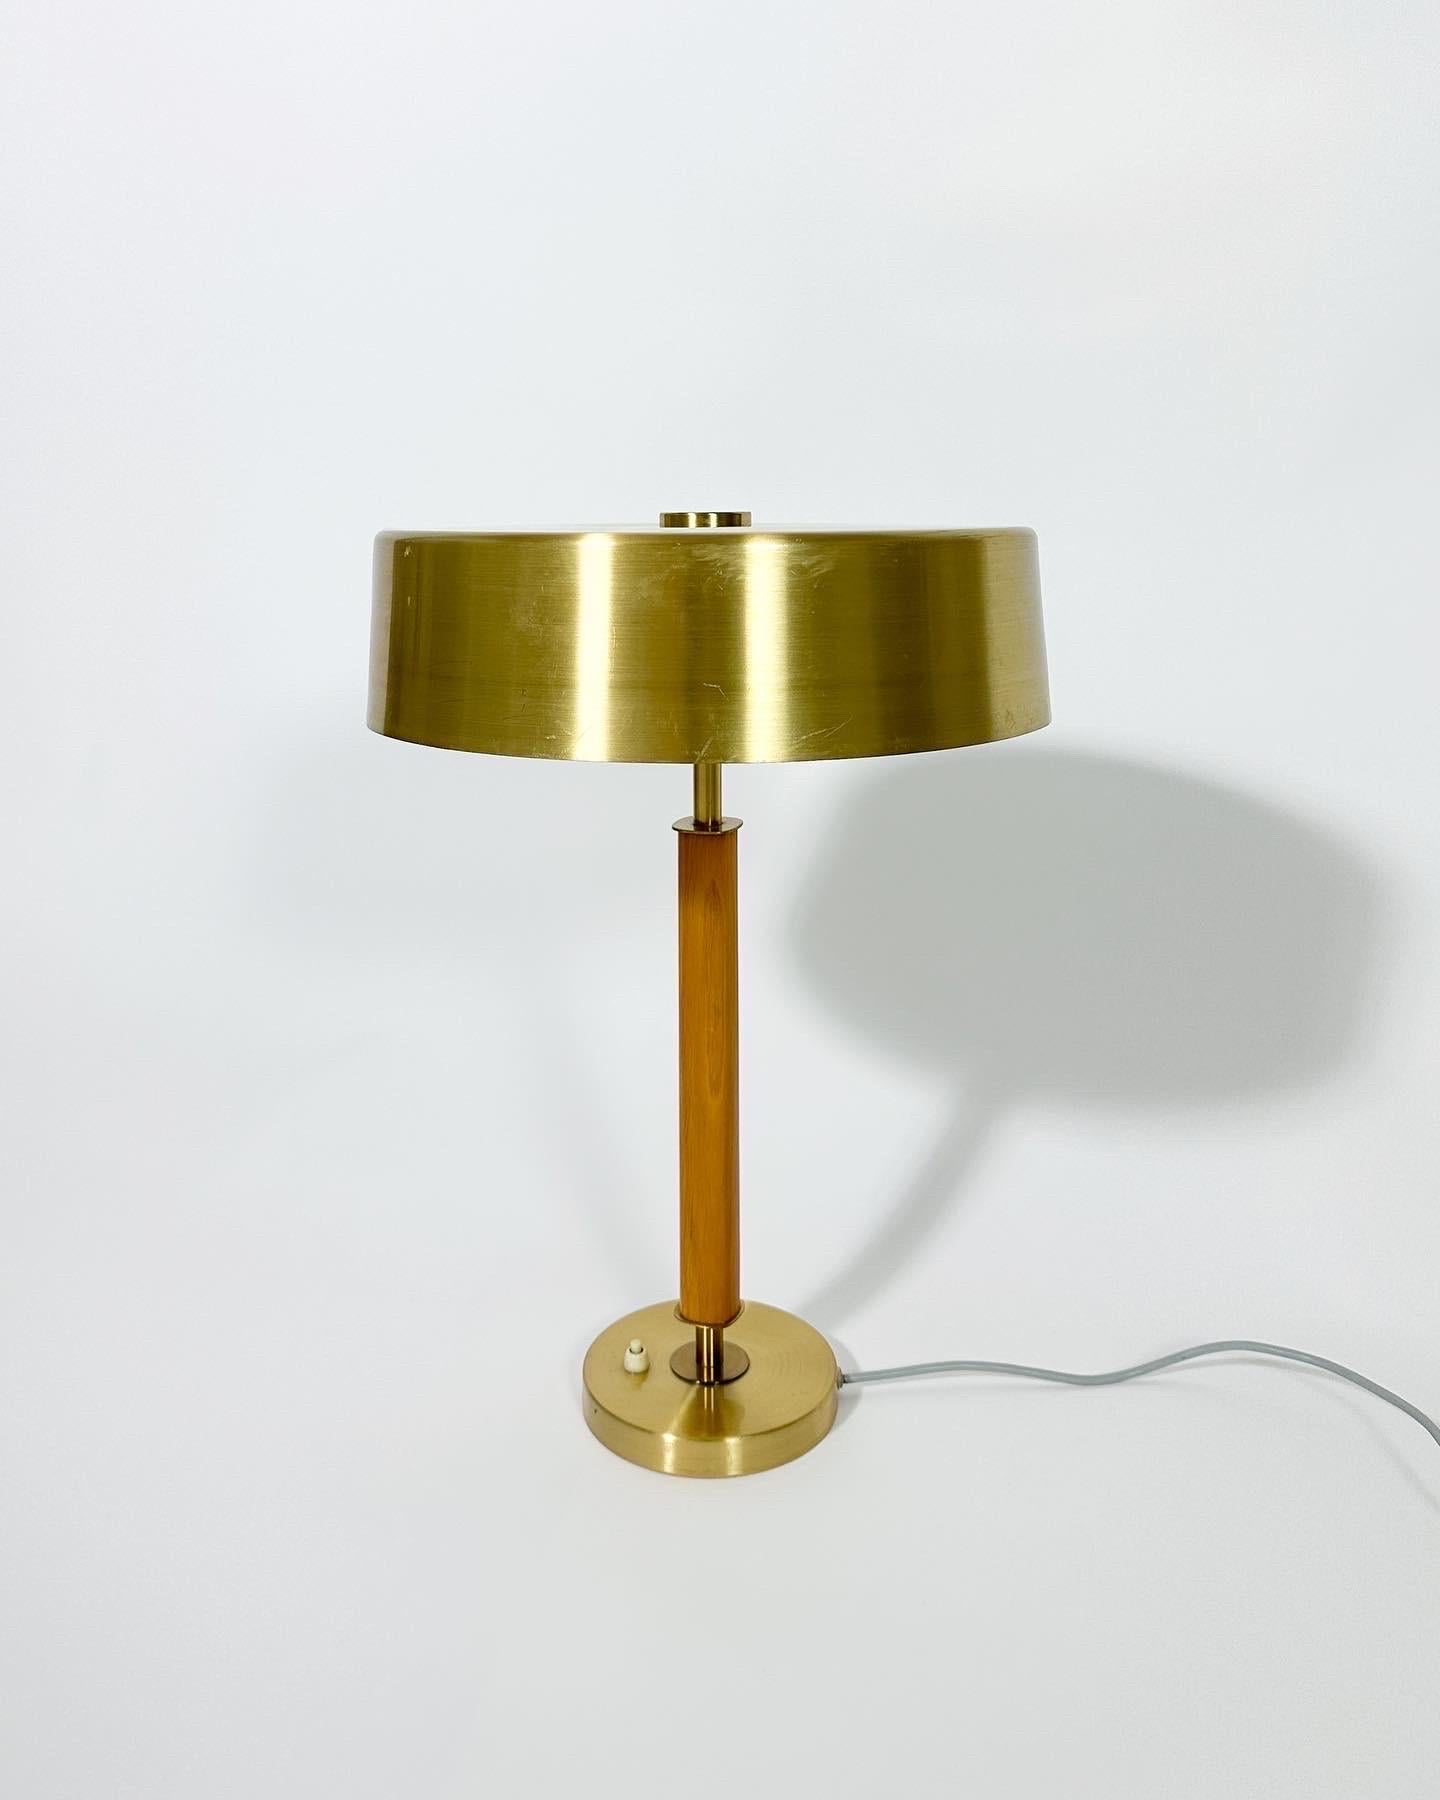 Elegante, klar gezeichnete Tischleuchte der schwedischen Beleuchtungsfirma Boréns aus Borås aus den 1960er Jahren.

Modell Nr. B8449 mit einem Schirm aus gebürstetem Messing und einem kontrastierenden Holzstiel. Schöner Messingknopf